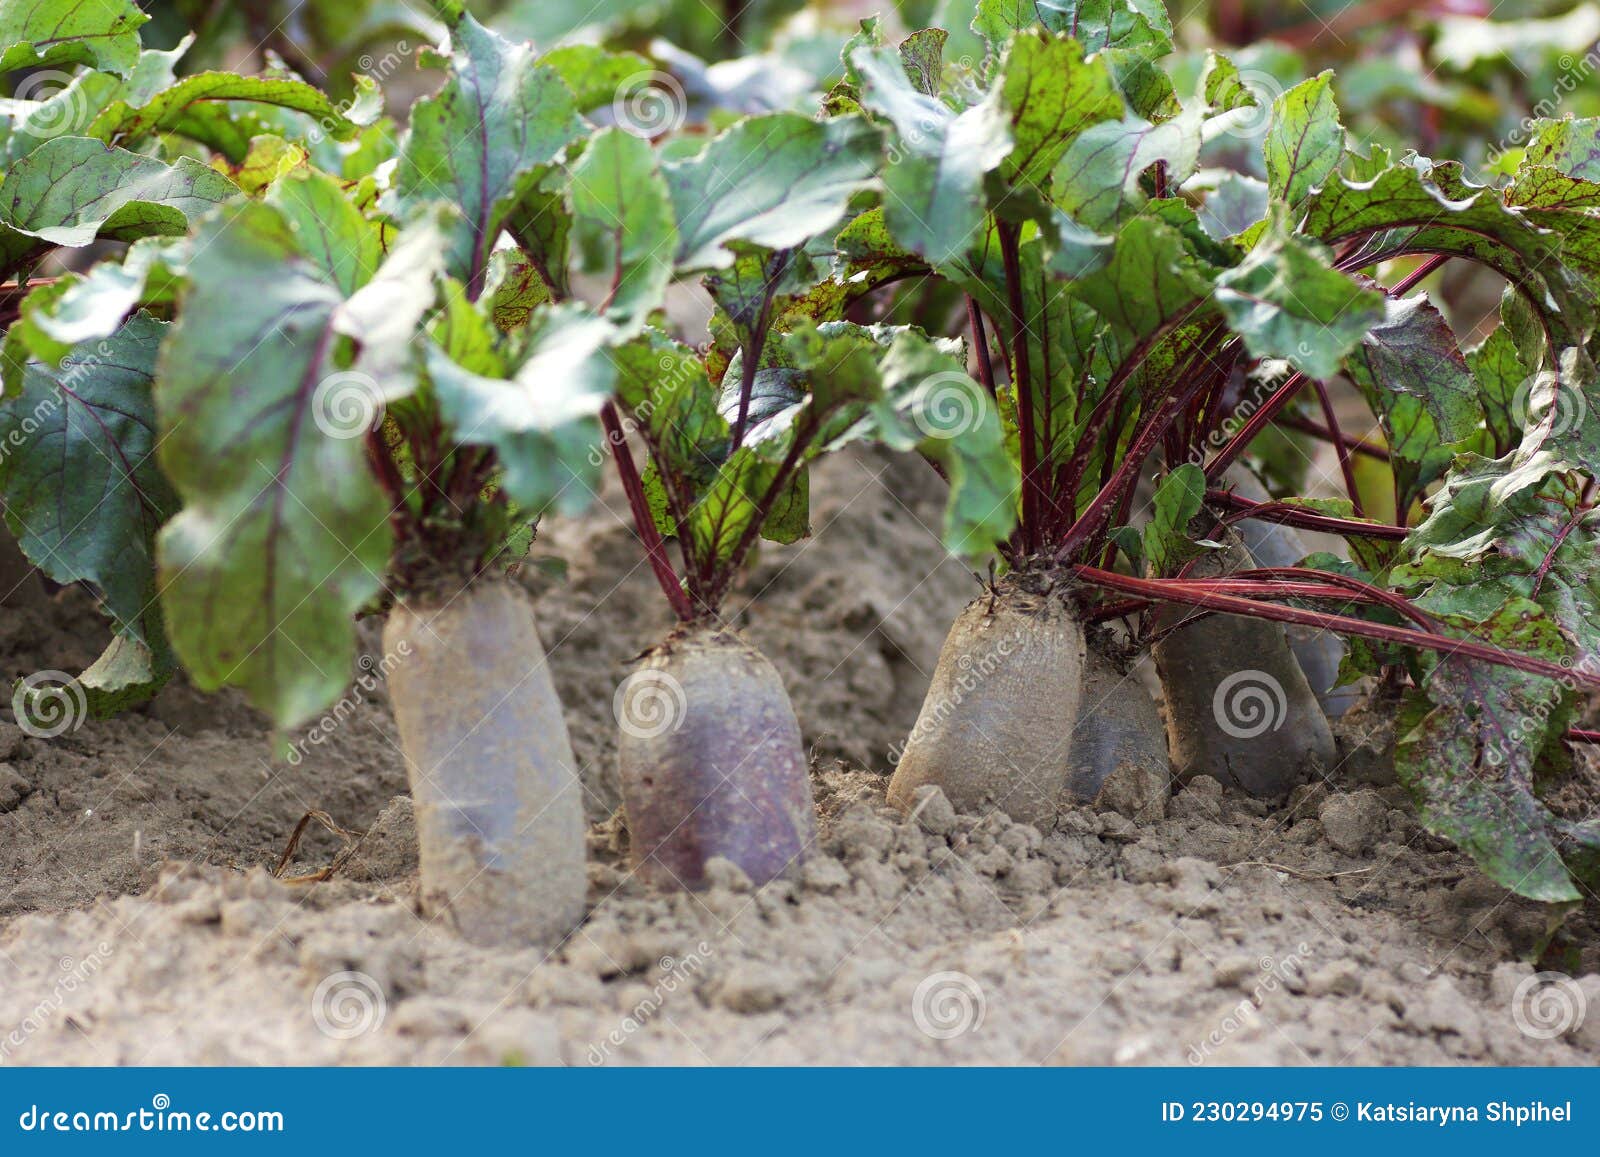 生长红色甜菜根 库存照片. 图片 包括有 种田, 耕种, 绿色, 庄稼, 地产, 生长, 本质, 庭院, 营养 - 26577288